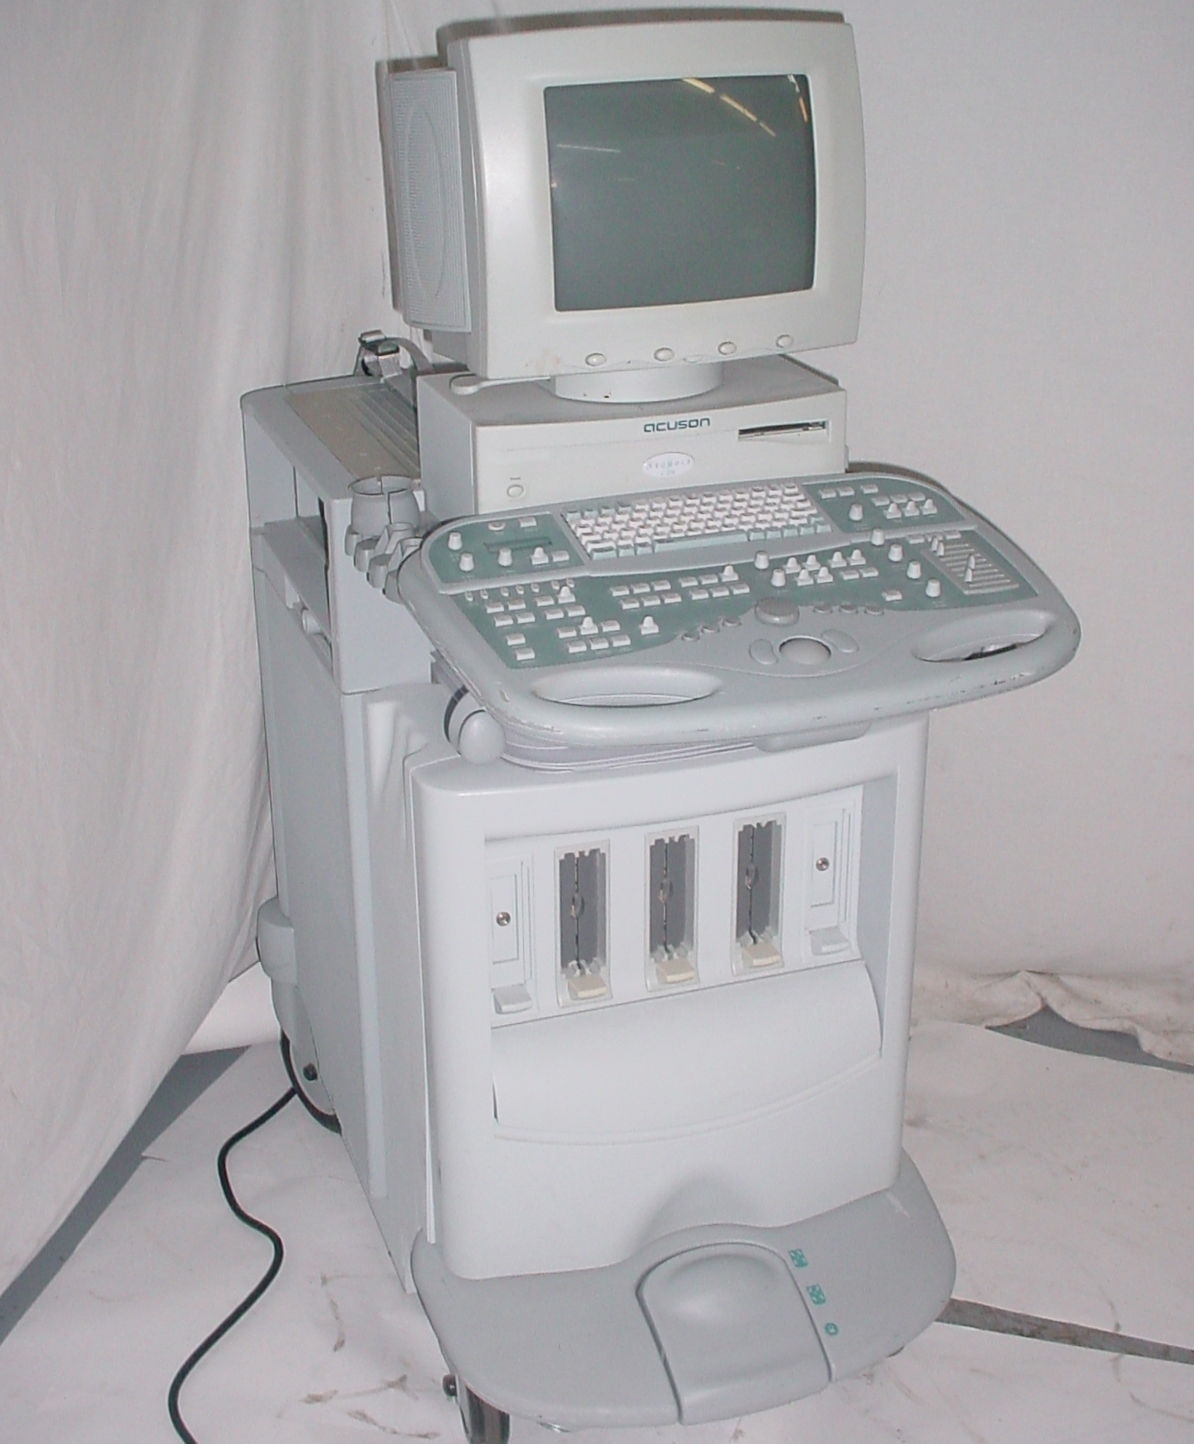 Acuson Sequoia C 256 Diagnostic Ultrasound Echocariography System C256 DIAGNOSTIC ULTRASOUND MACHINES FOR SALE